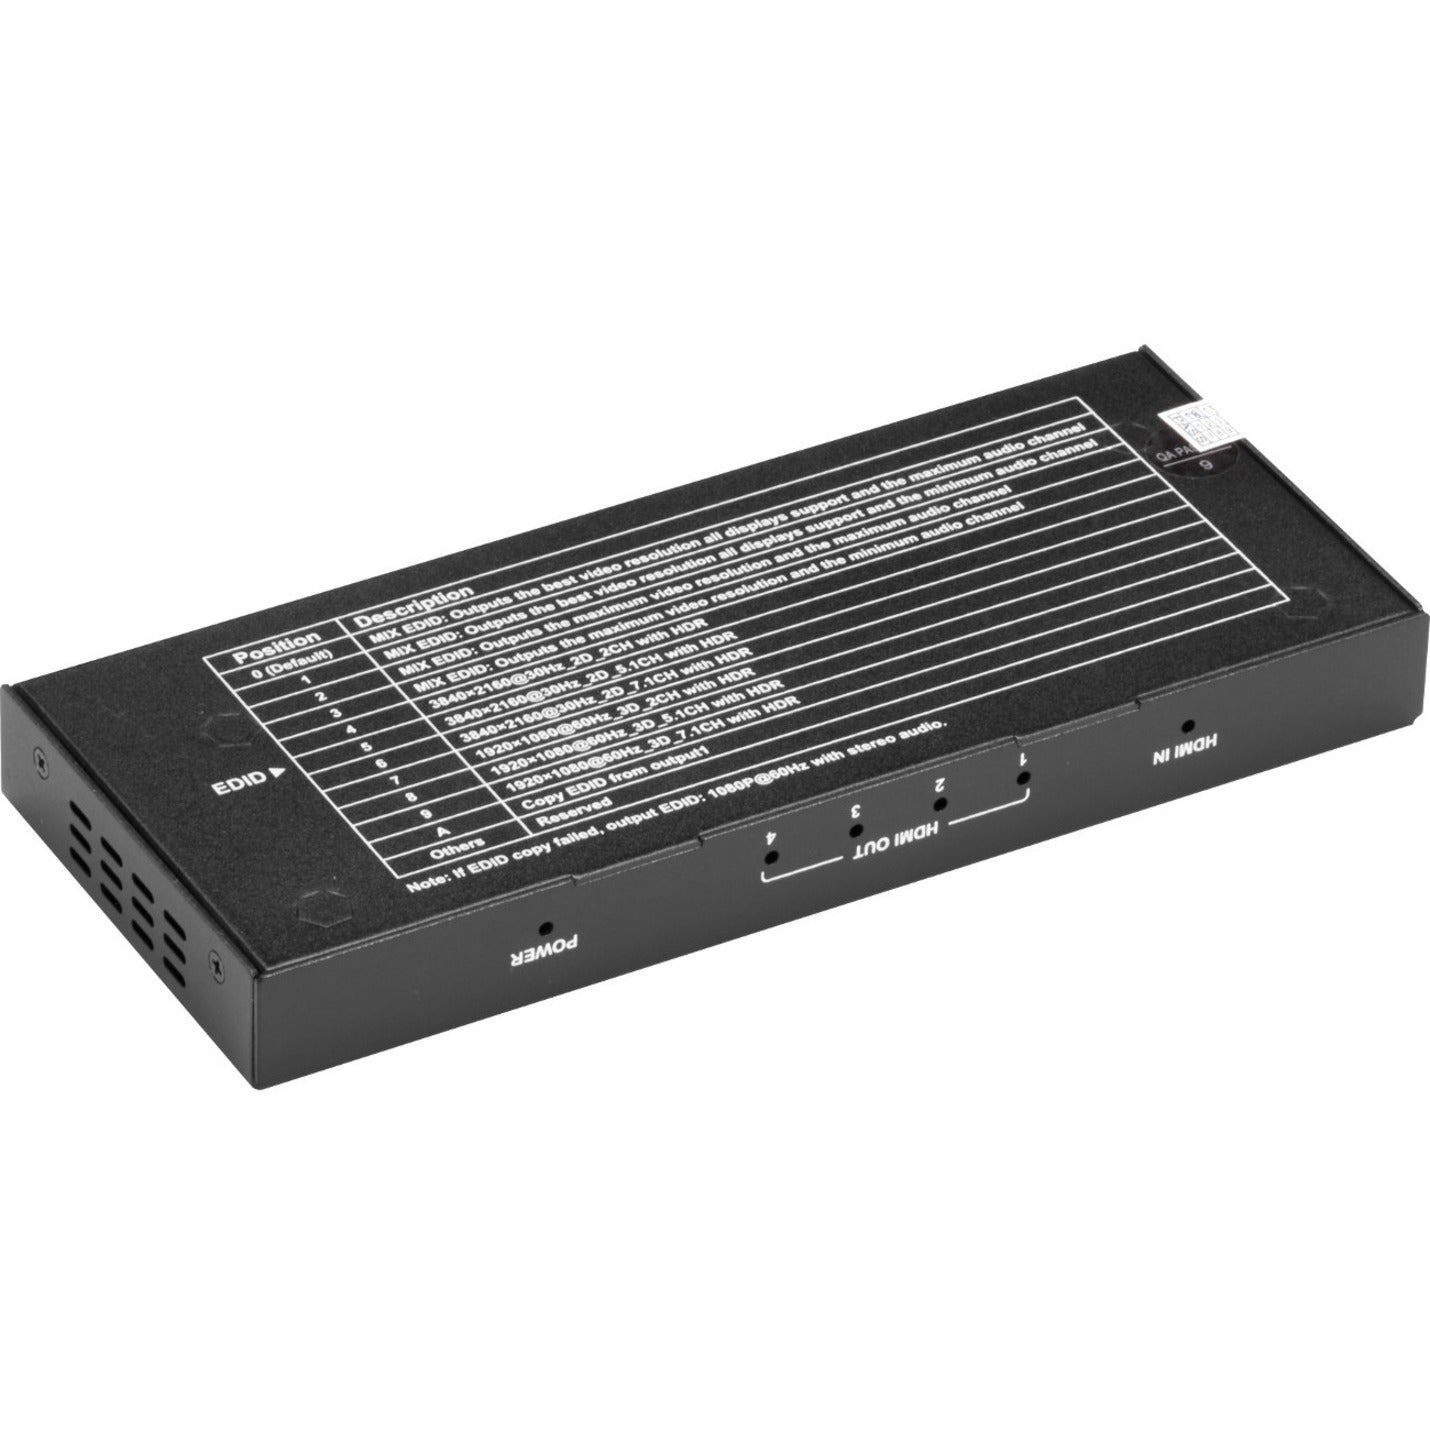 Black Box VSP-HDMI2-1X4 HDMI 2.0 4K60 Splitter - 1x4, Maximum Video Resolution 4096 x 2160, 3 Year Warranty